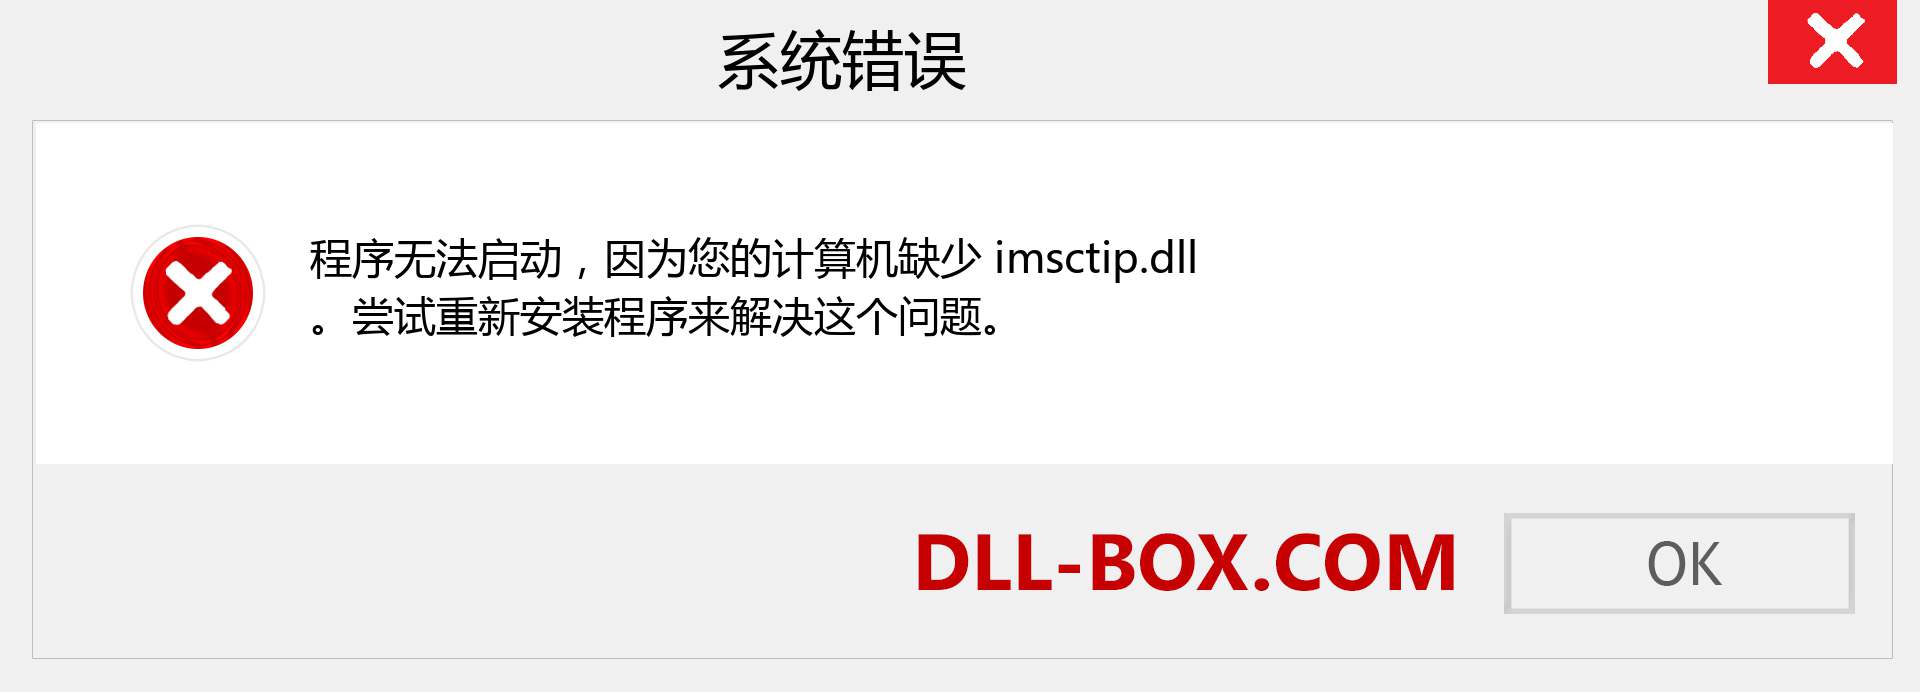 imsctip.dll 文件丢失？。 适用于 Windows 7、8、10 的下载 - 修复 Windows、照片、图像上的 imsctip dll 丢失错误